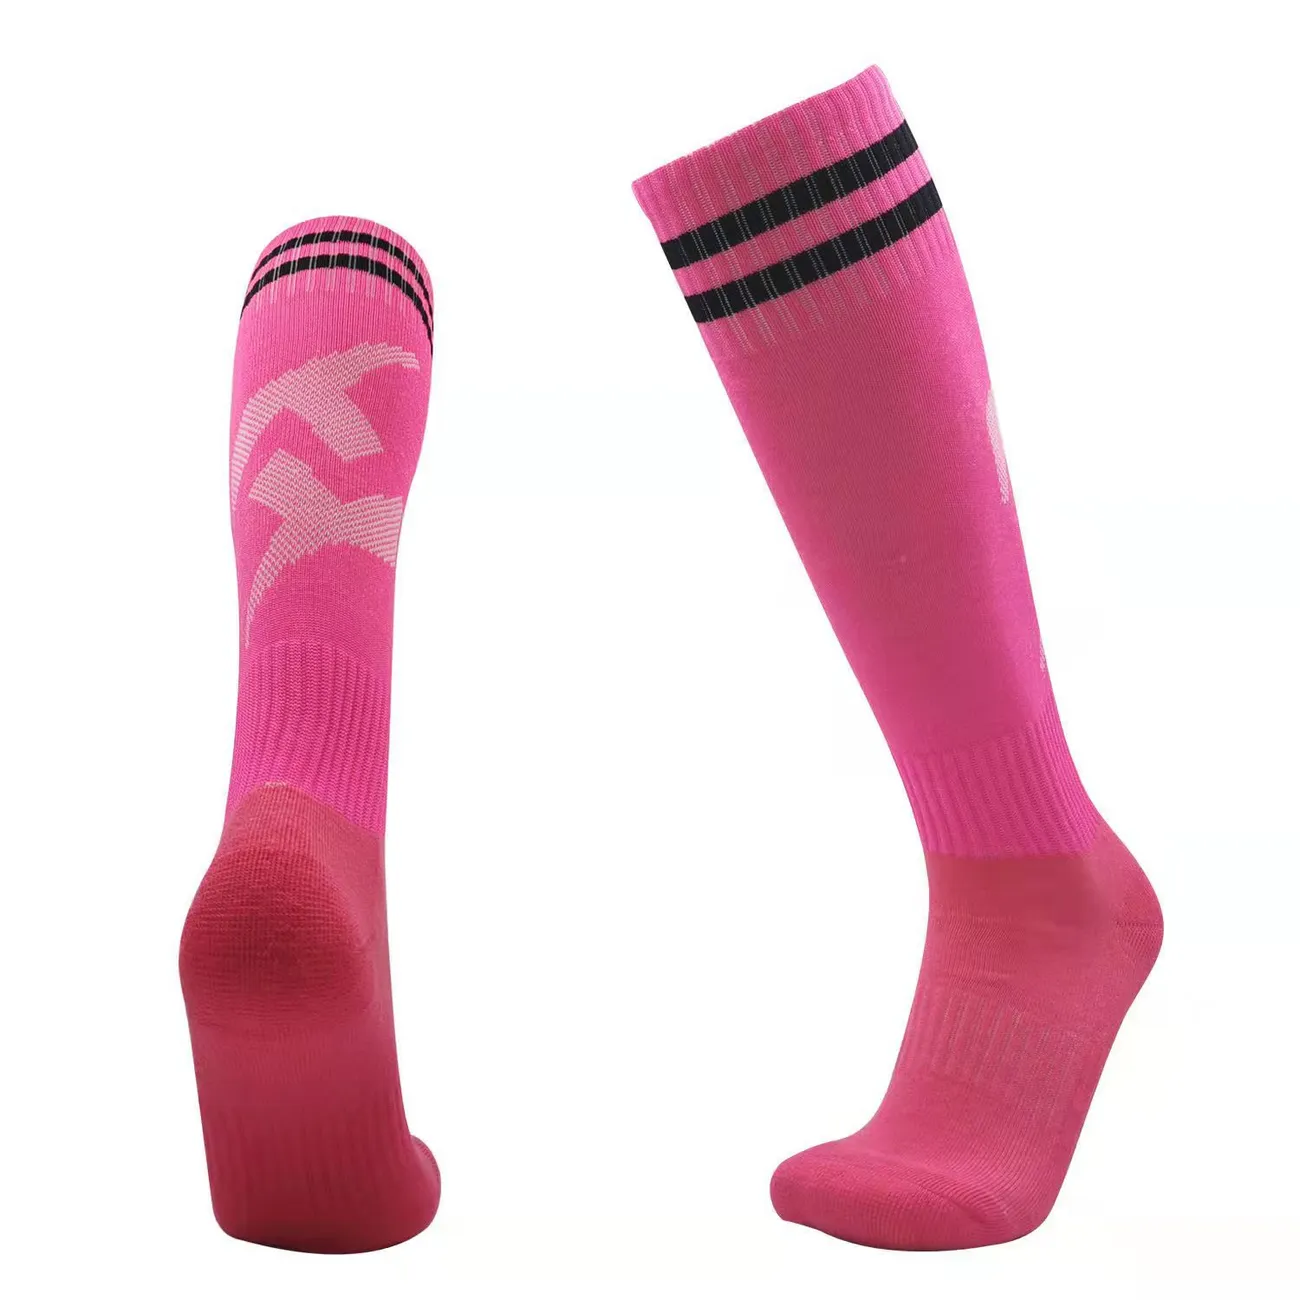 Pink and Black Soccer Socks Hot Pink big image 1